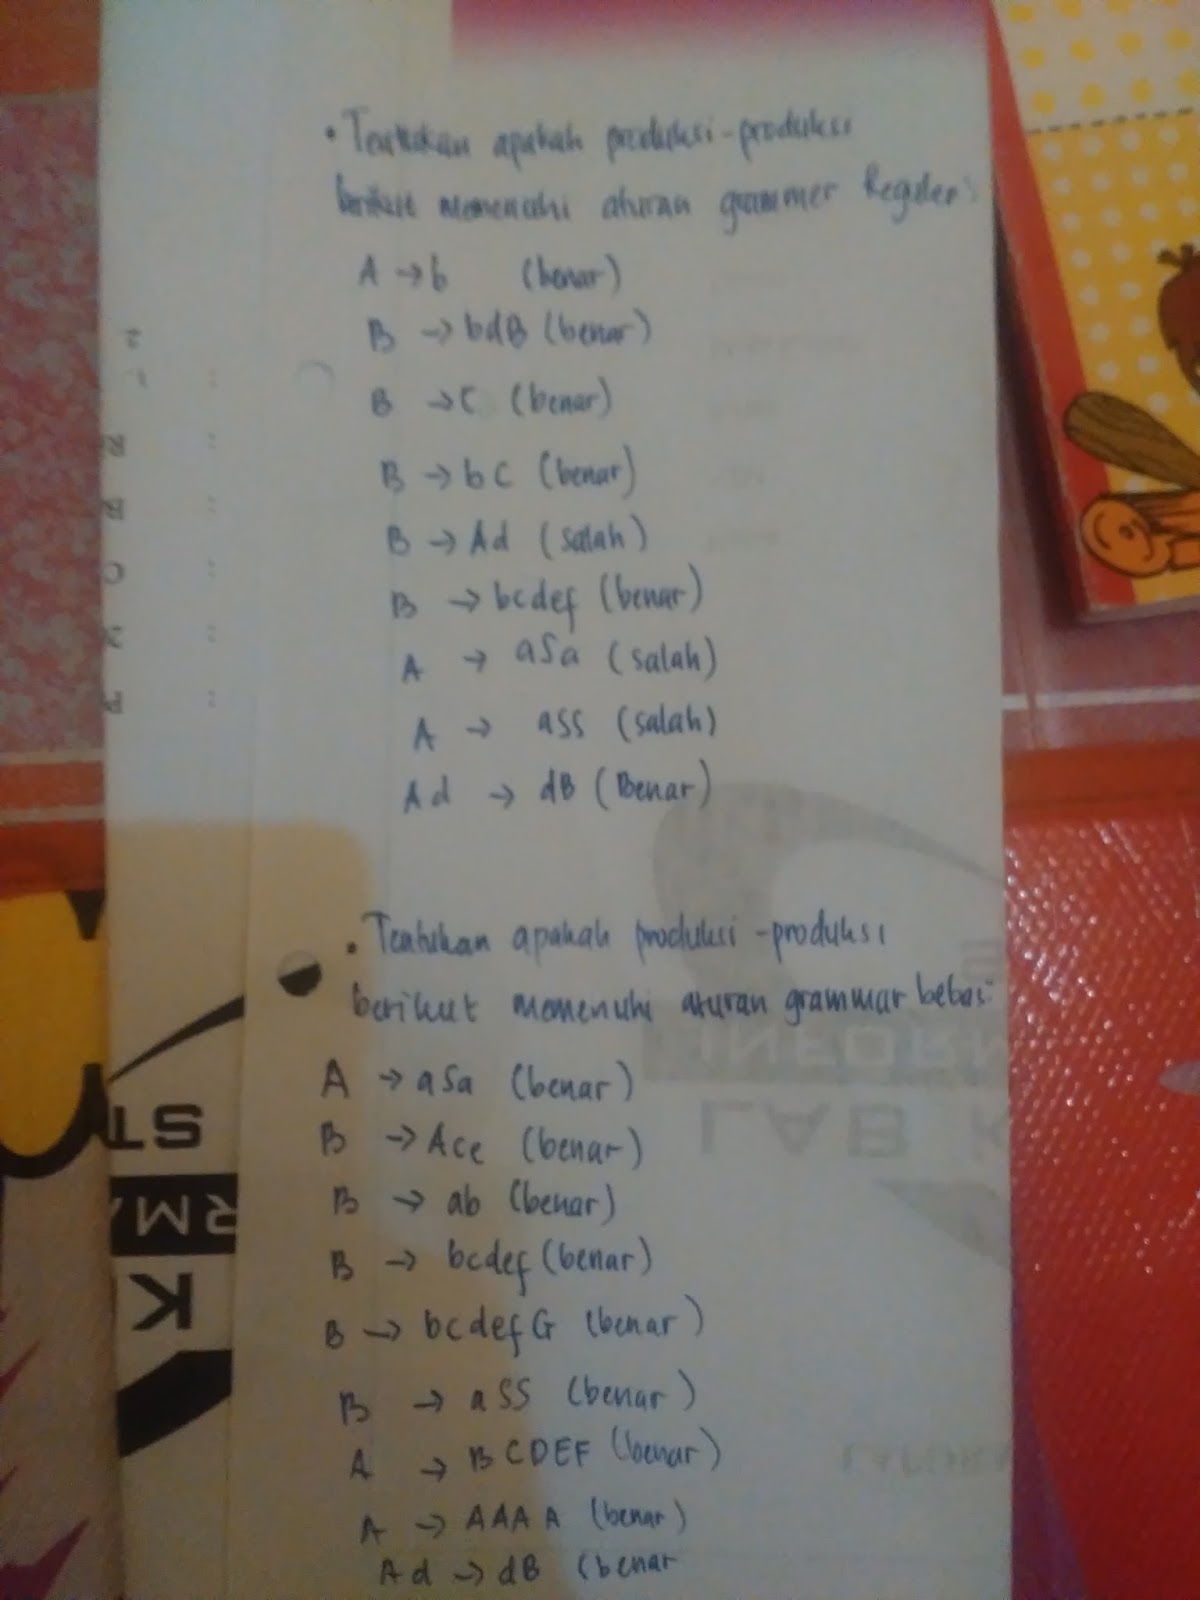 dvejetainis variantas dalam bahasa indonesia)